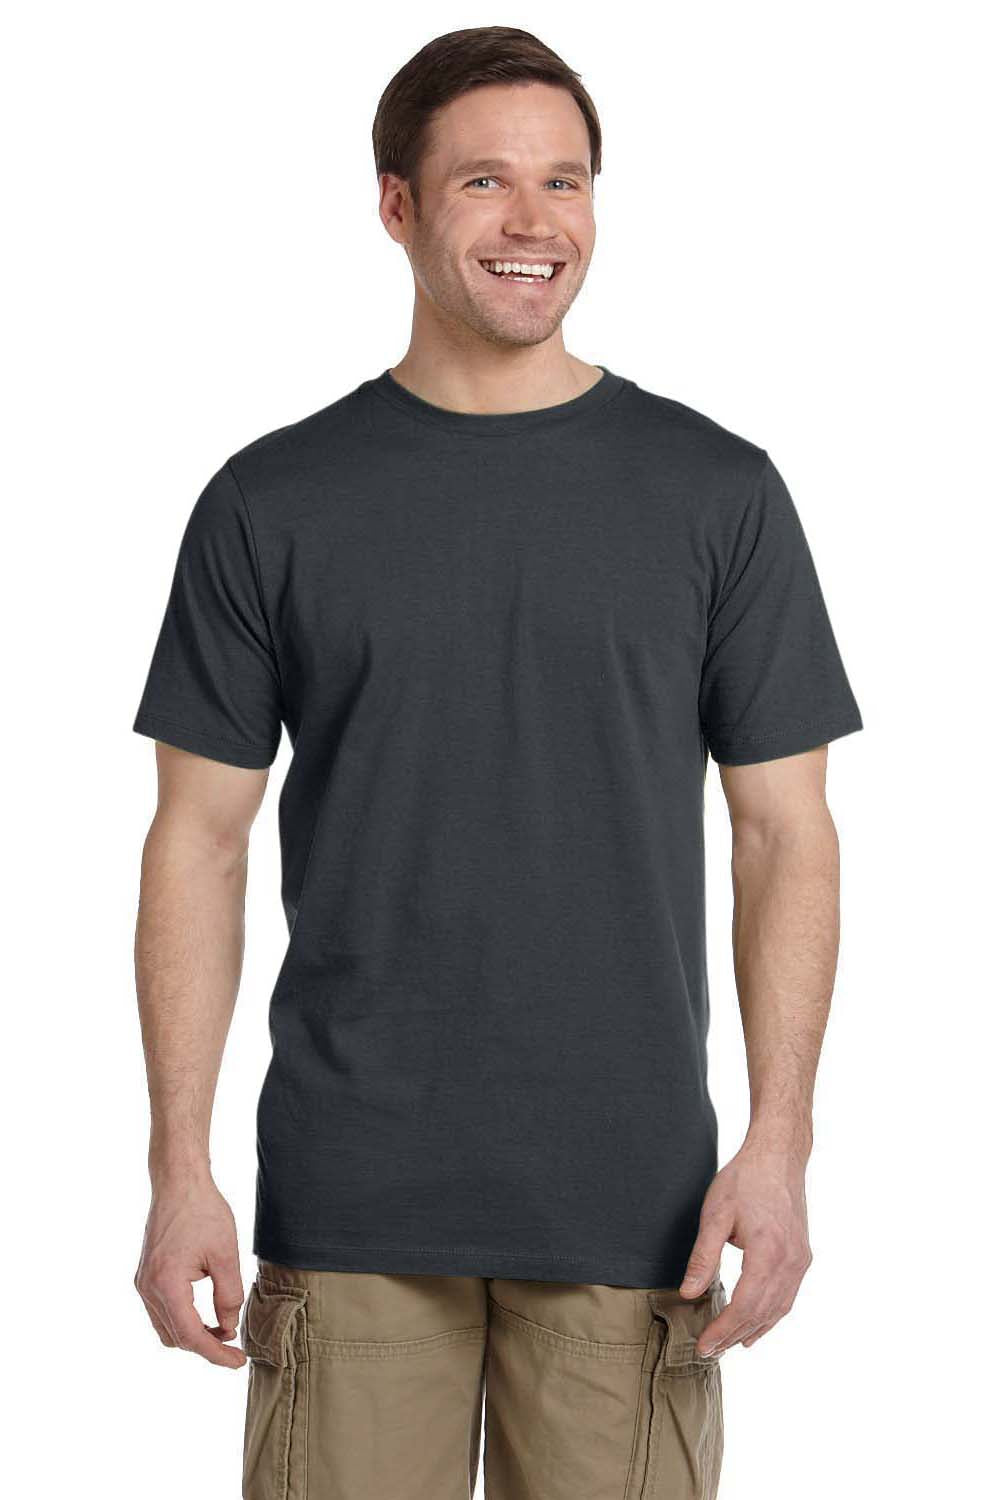 Econscious EC1075 Mens Short Sleeve Crewneck T-Shirt Charcoal Grey Front